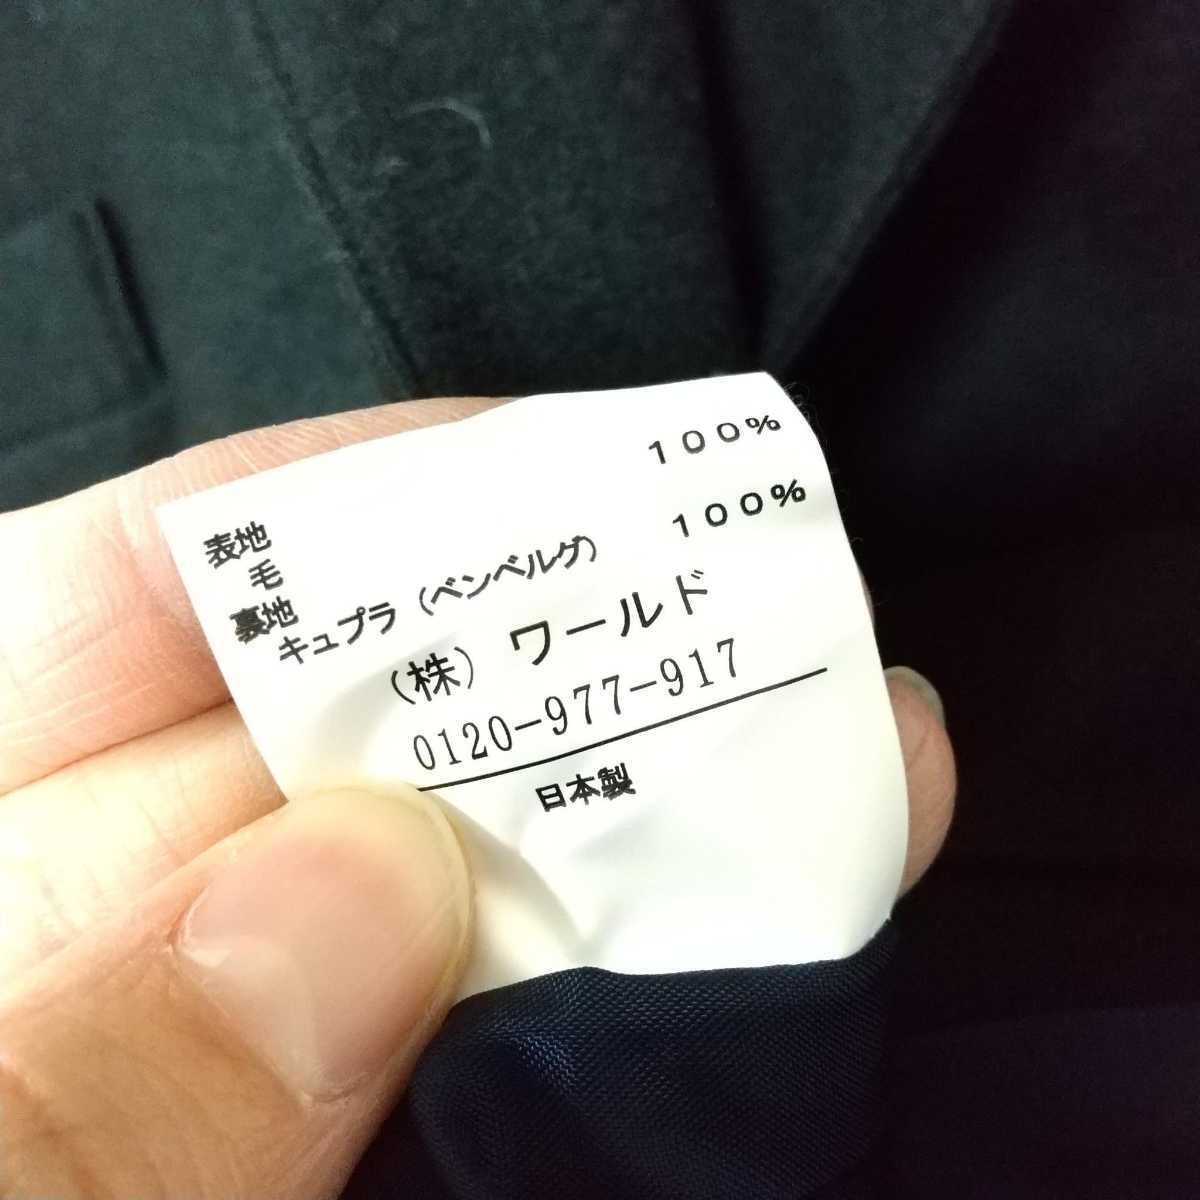 F4239UL{UNTITLED Untitled } размер 2 M ранг tailored jacket жакет шерсть жакет черный чёрный женский сделано в Японии 